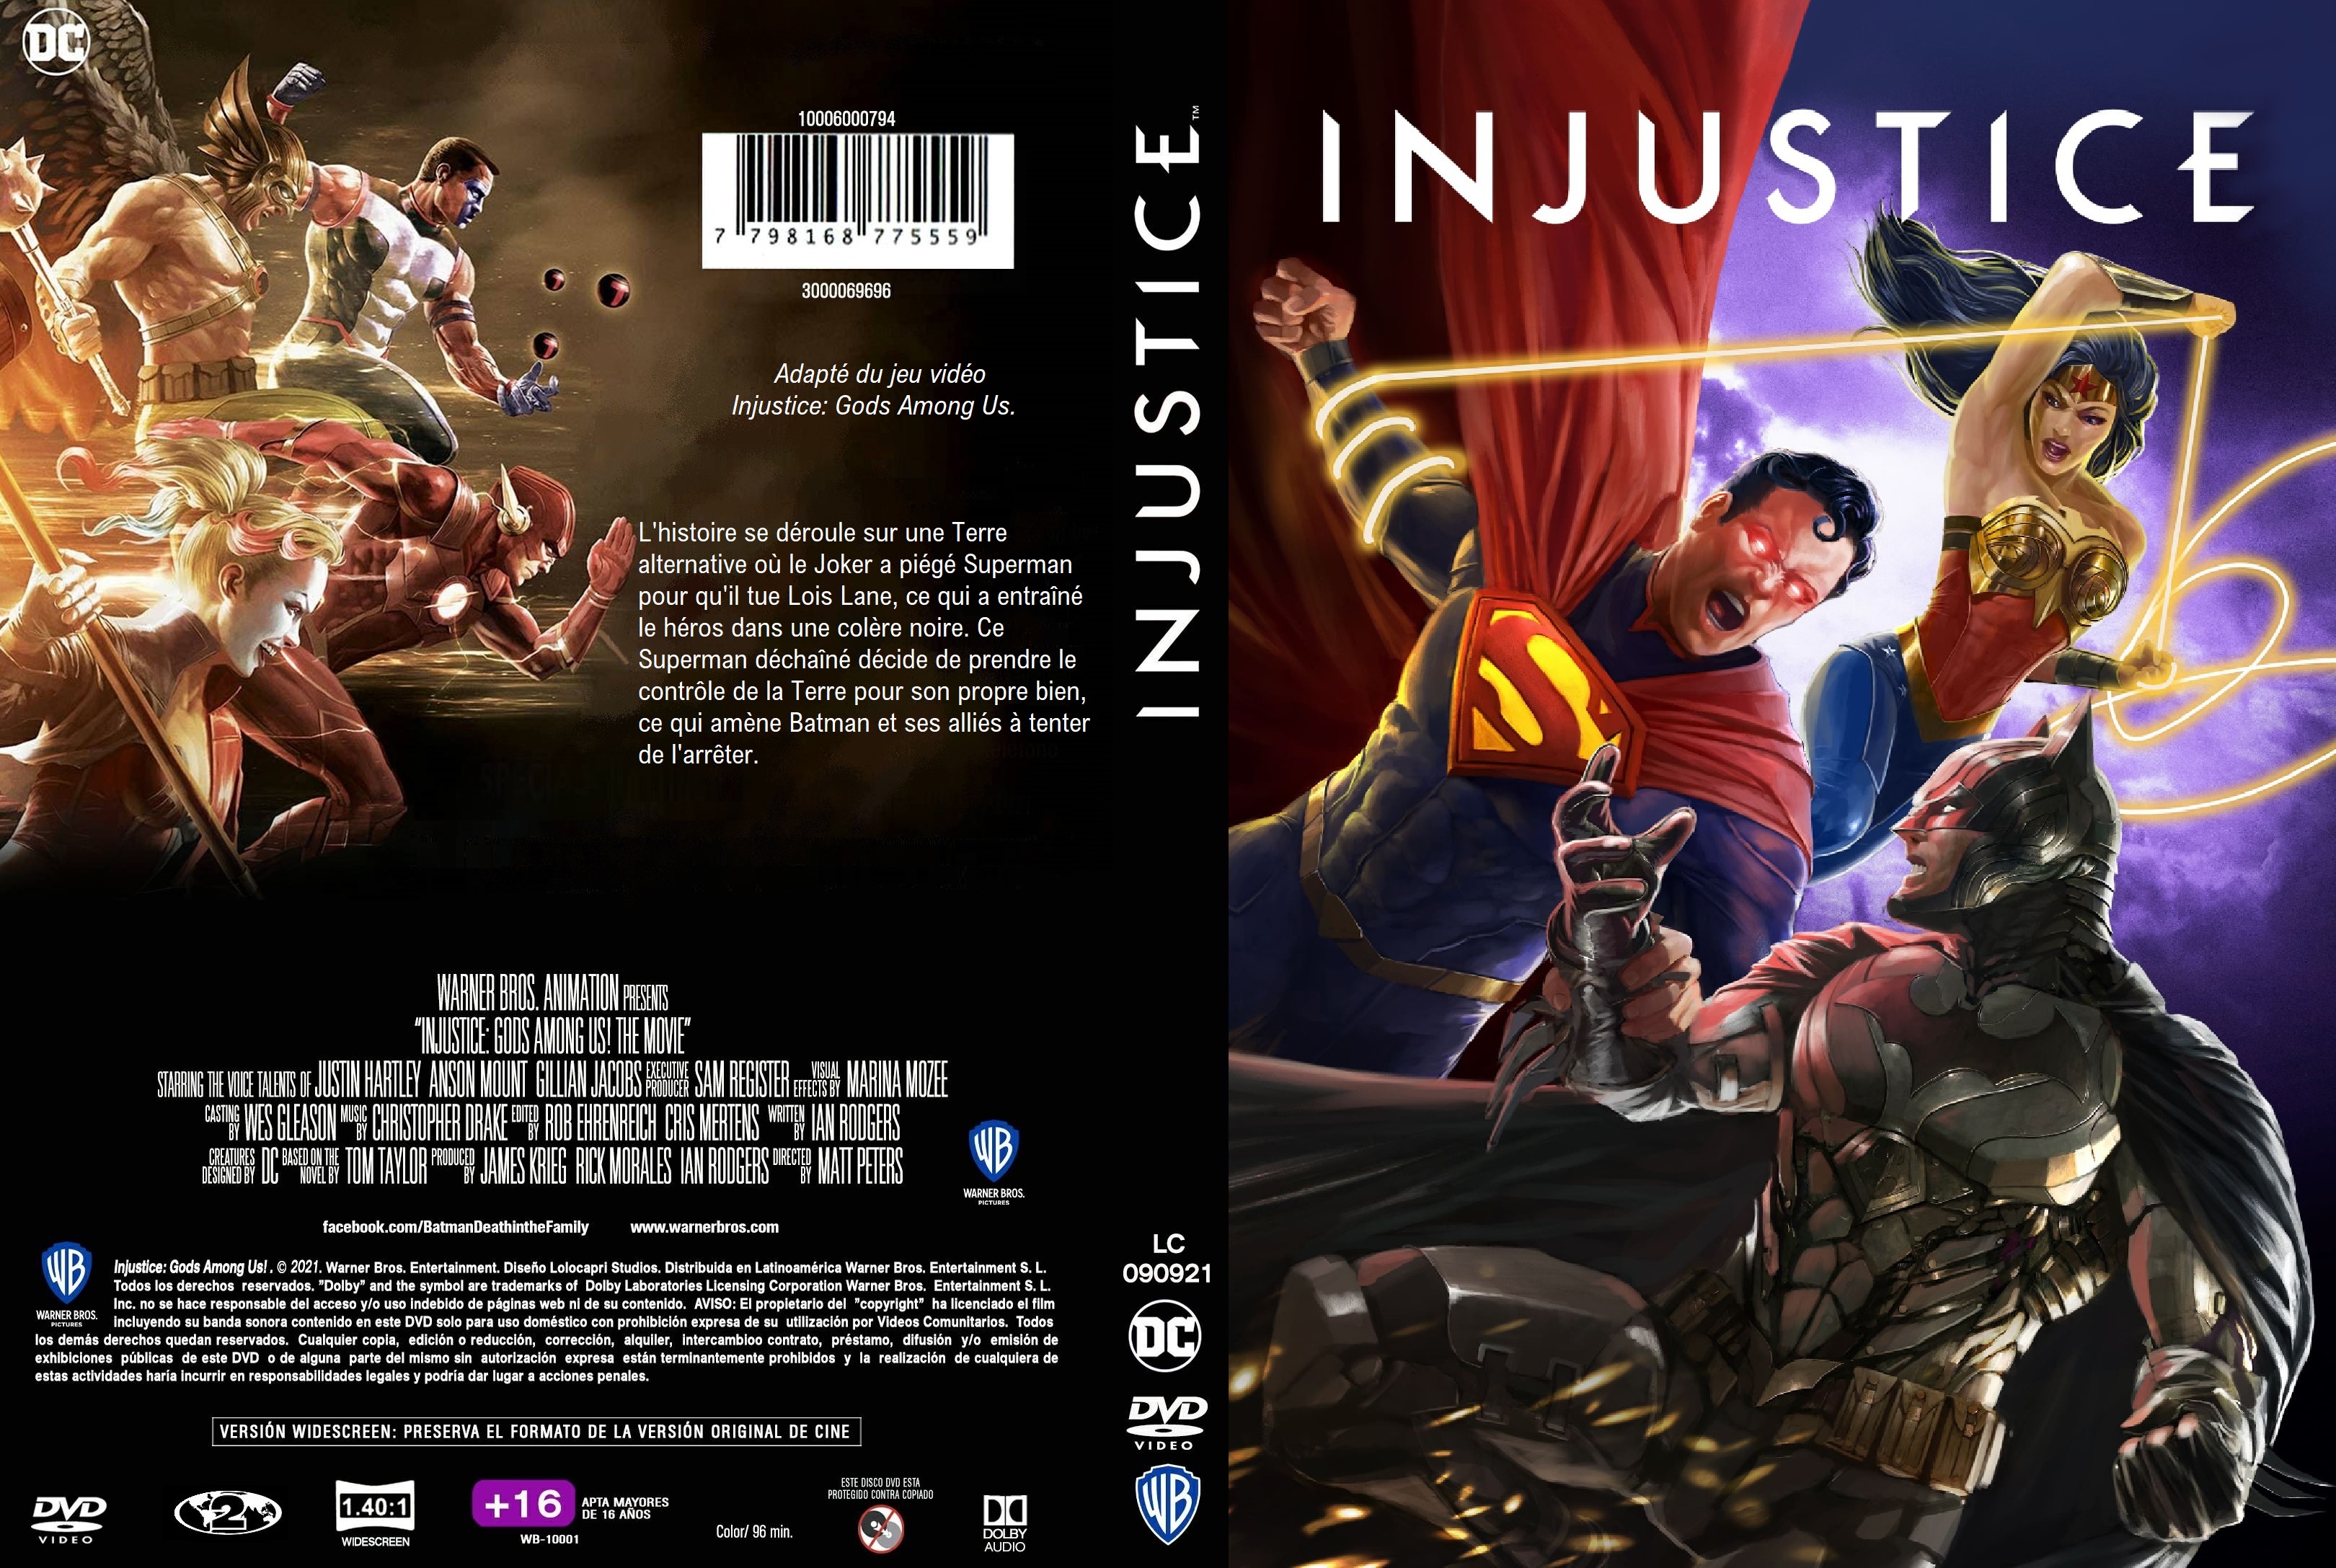 Jaquette DVD Injustice custom